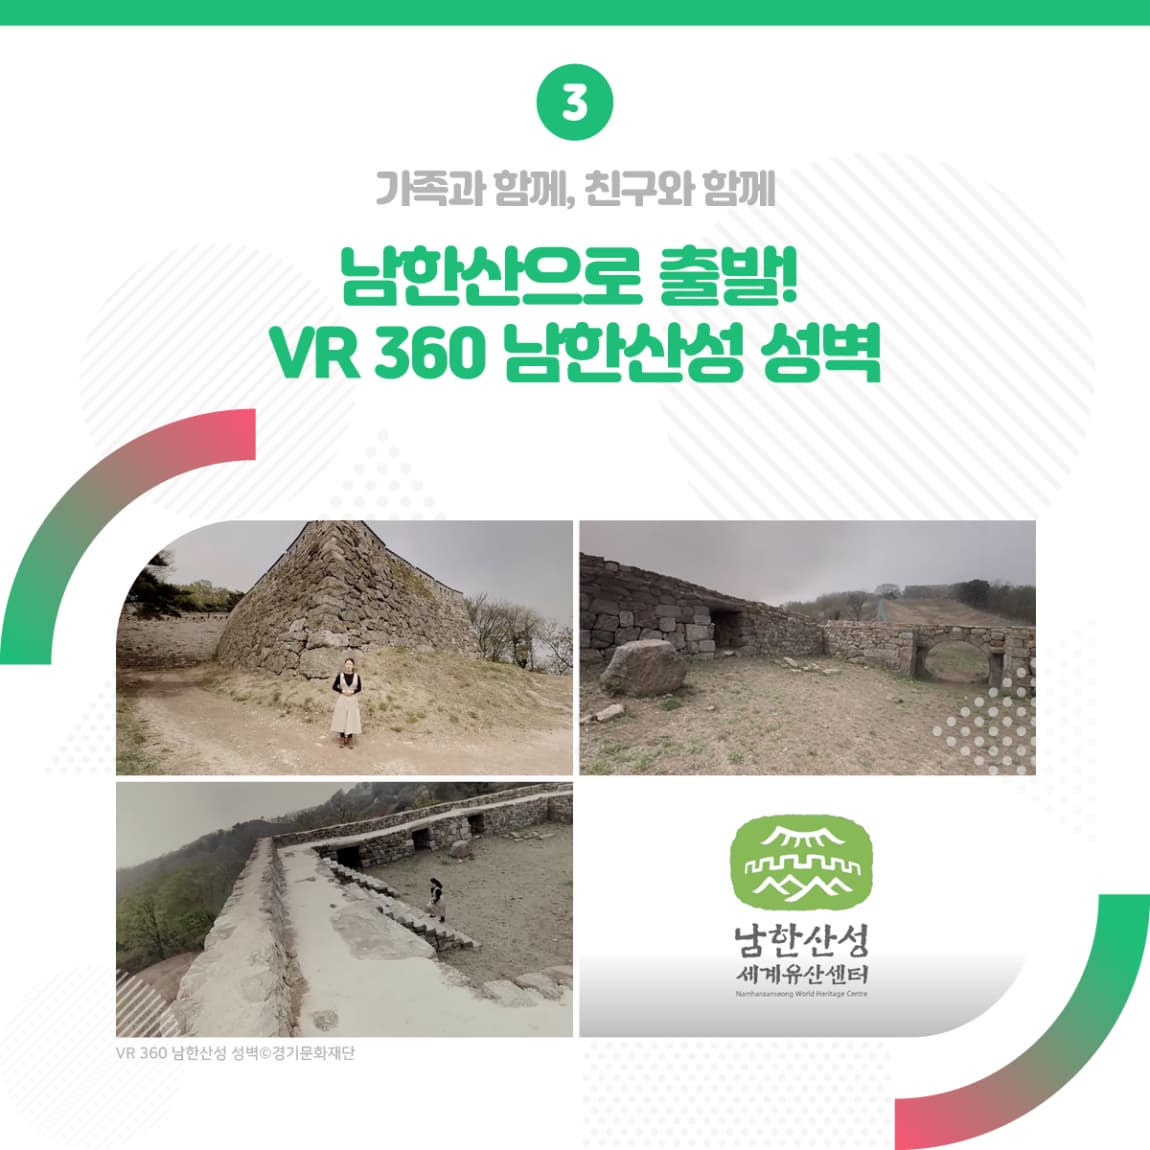 3.가족과 함께, 친구와 함께 남한산으로 출발! VR 360 남한산성 성벽